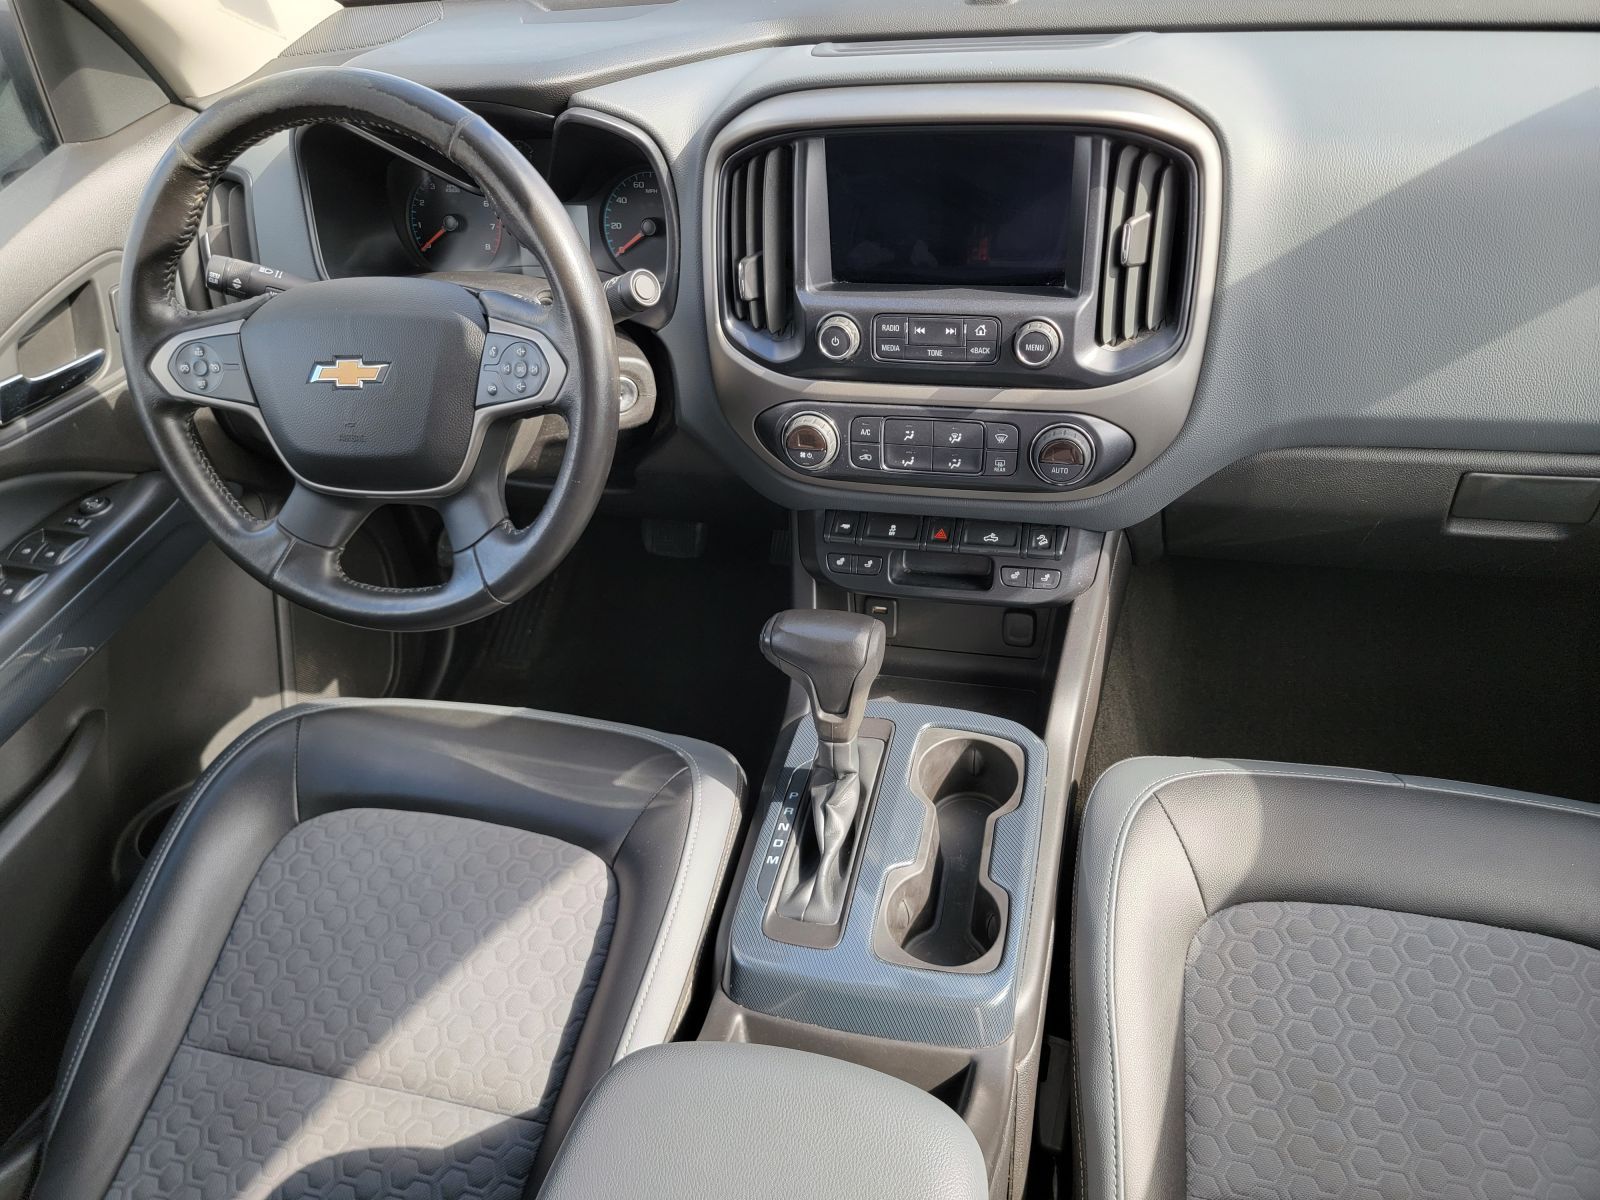 Used, 2015 Chevrolet Colorado 4WD Crew Cab 128.3